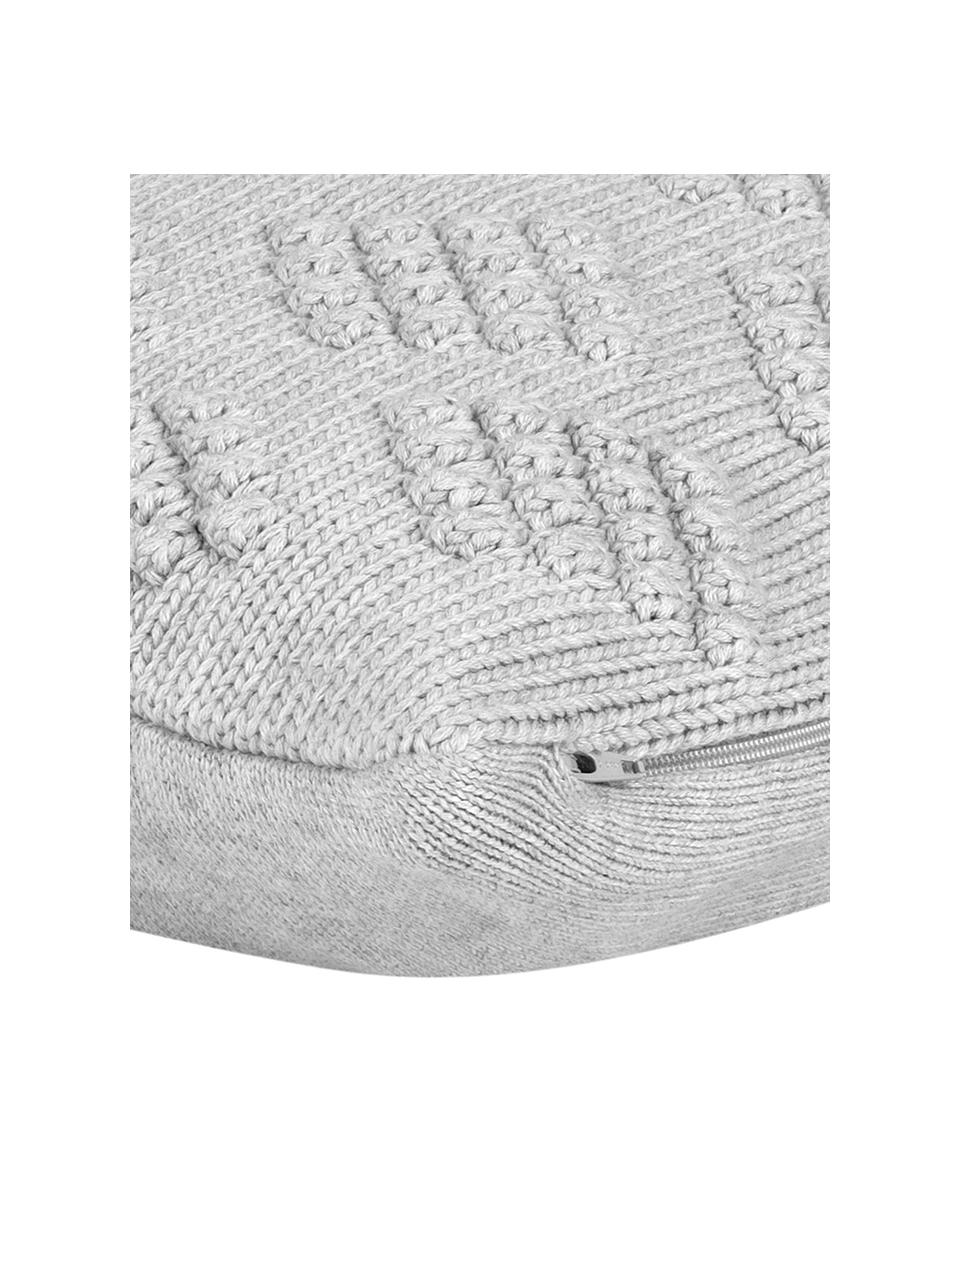 Gebreide kussenhoes Kelly, 100% katoen, Lichtgrijs, 40 x 40 cm